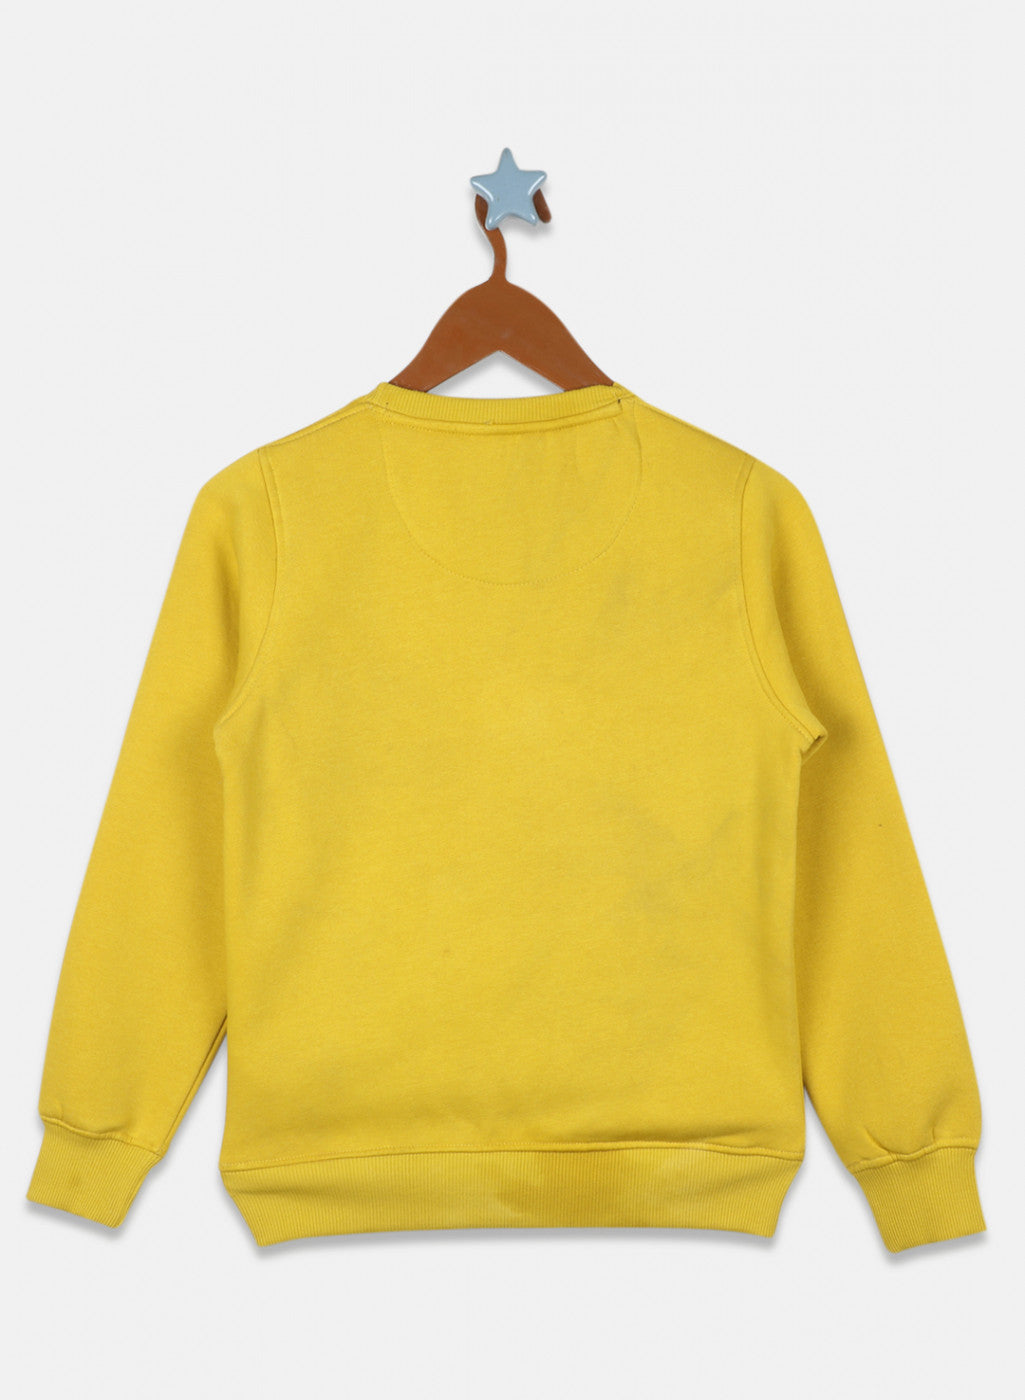 Boys Yellow Printed Sweatshirt